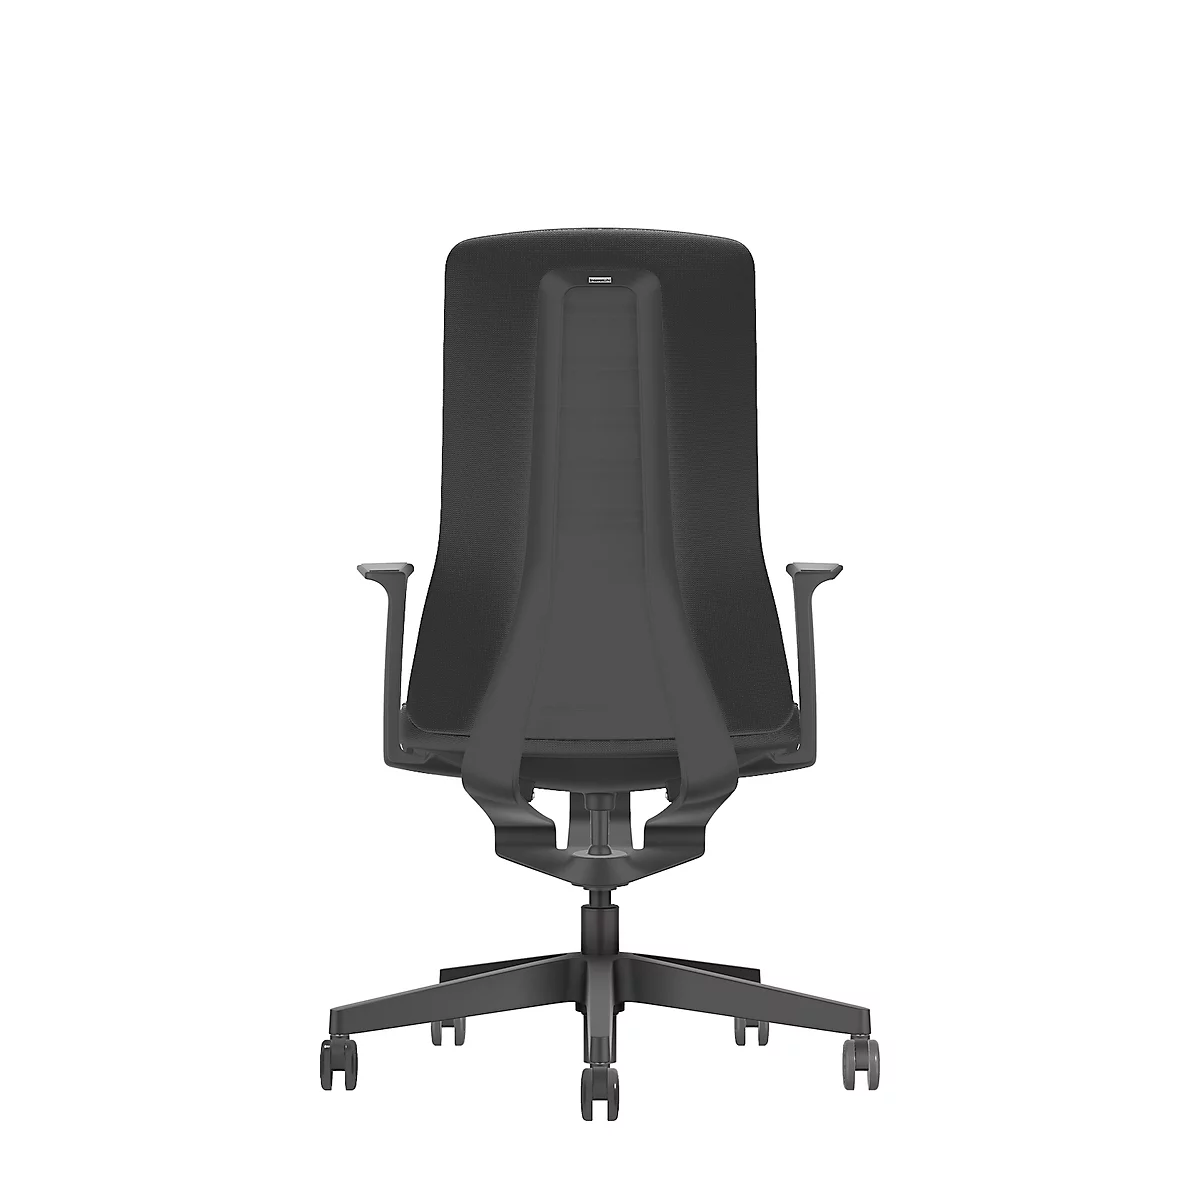 Interstuhl bureaustoel PUREis3, vaste armleuningen, 3D auto-synchroonmechanisme, kuipzitting, gestoffeerde rug, zwart/zwart